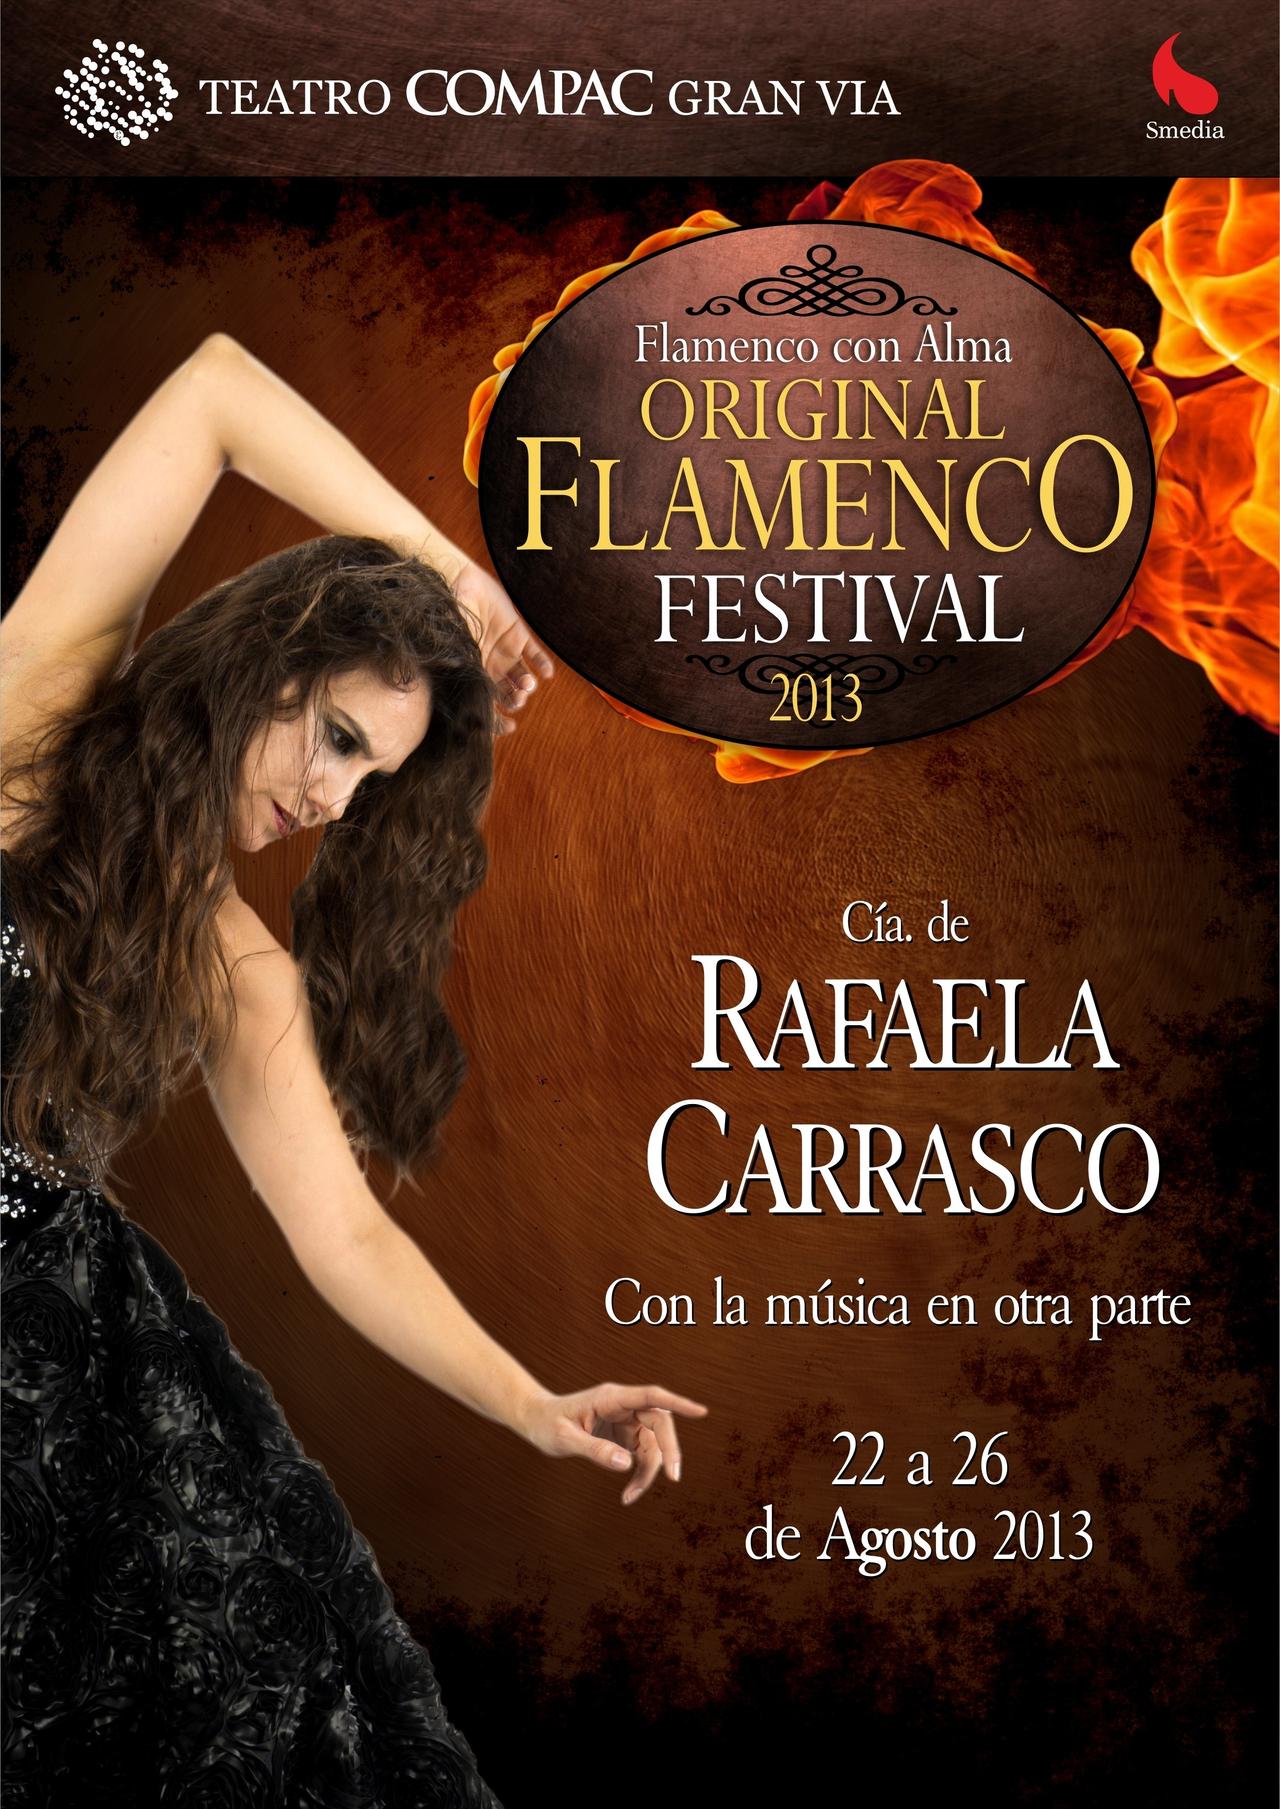 Rafaela Carrasco - Original Flamenco Festival